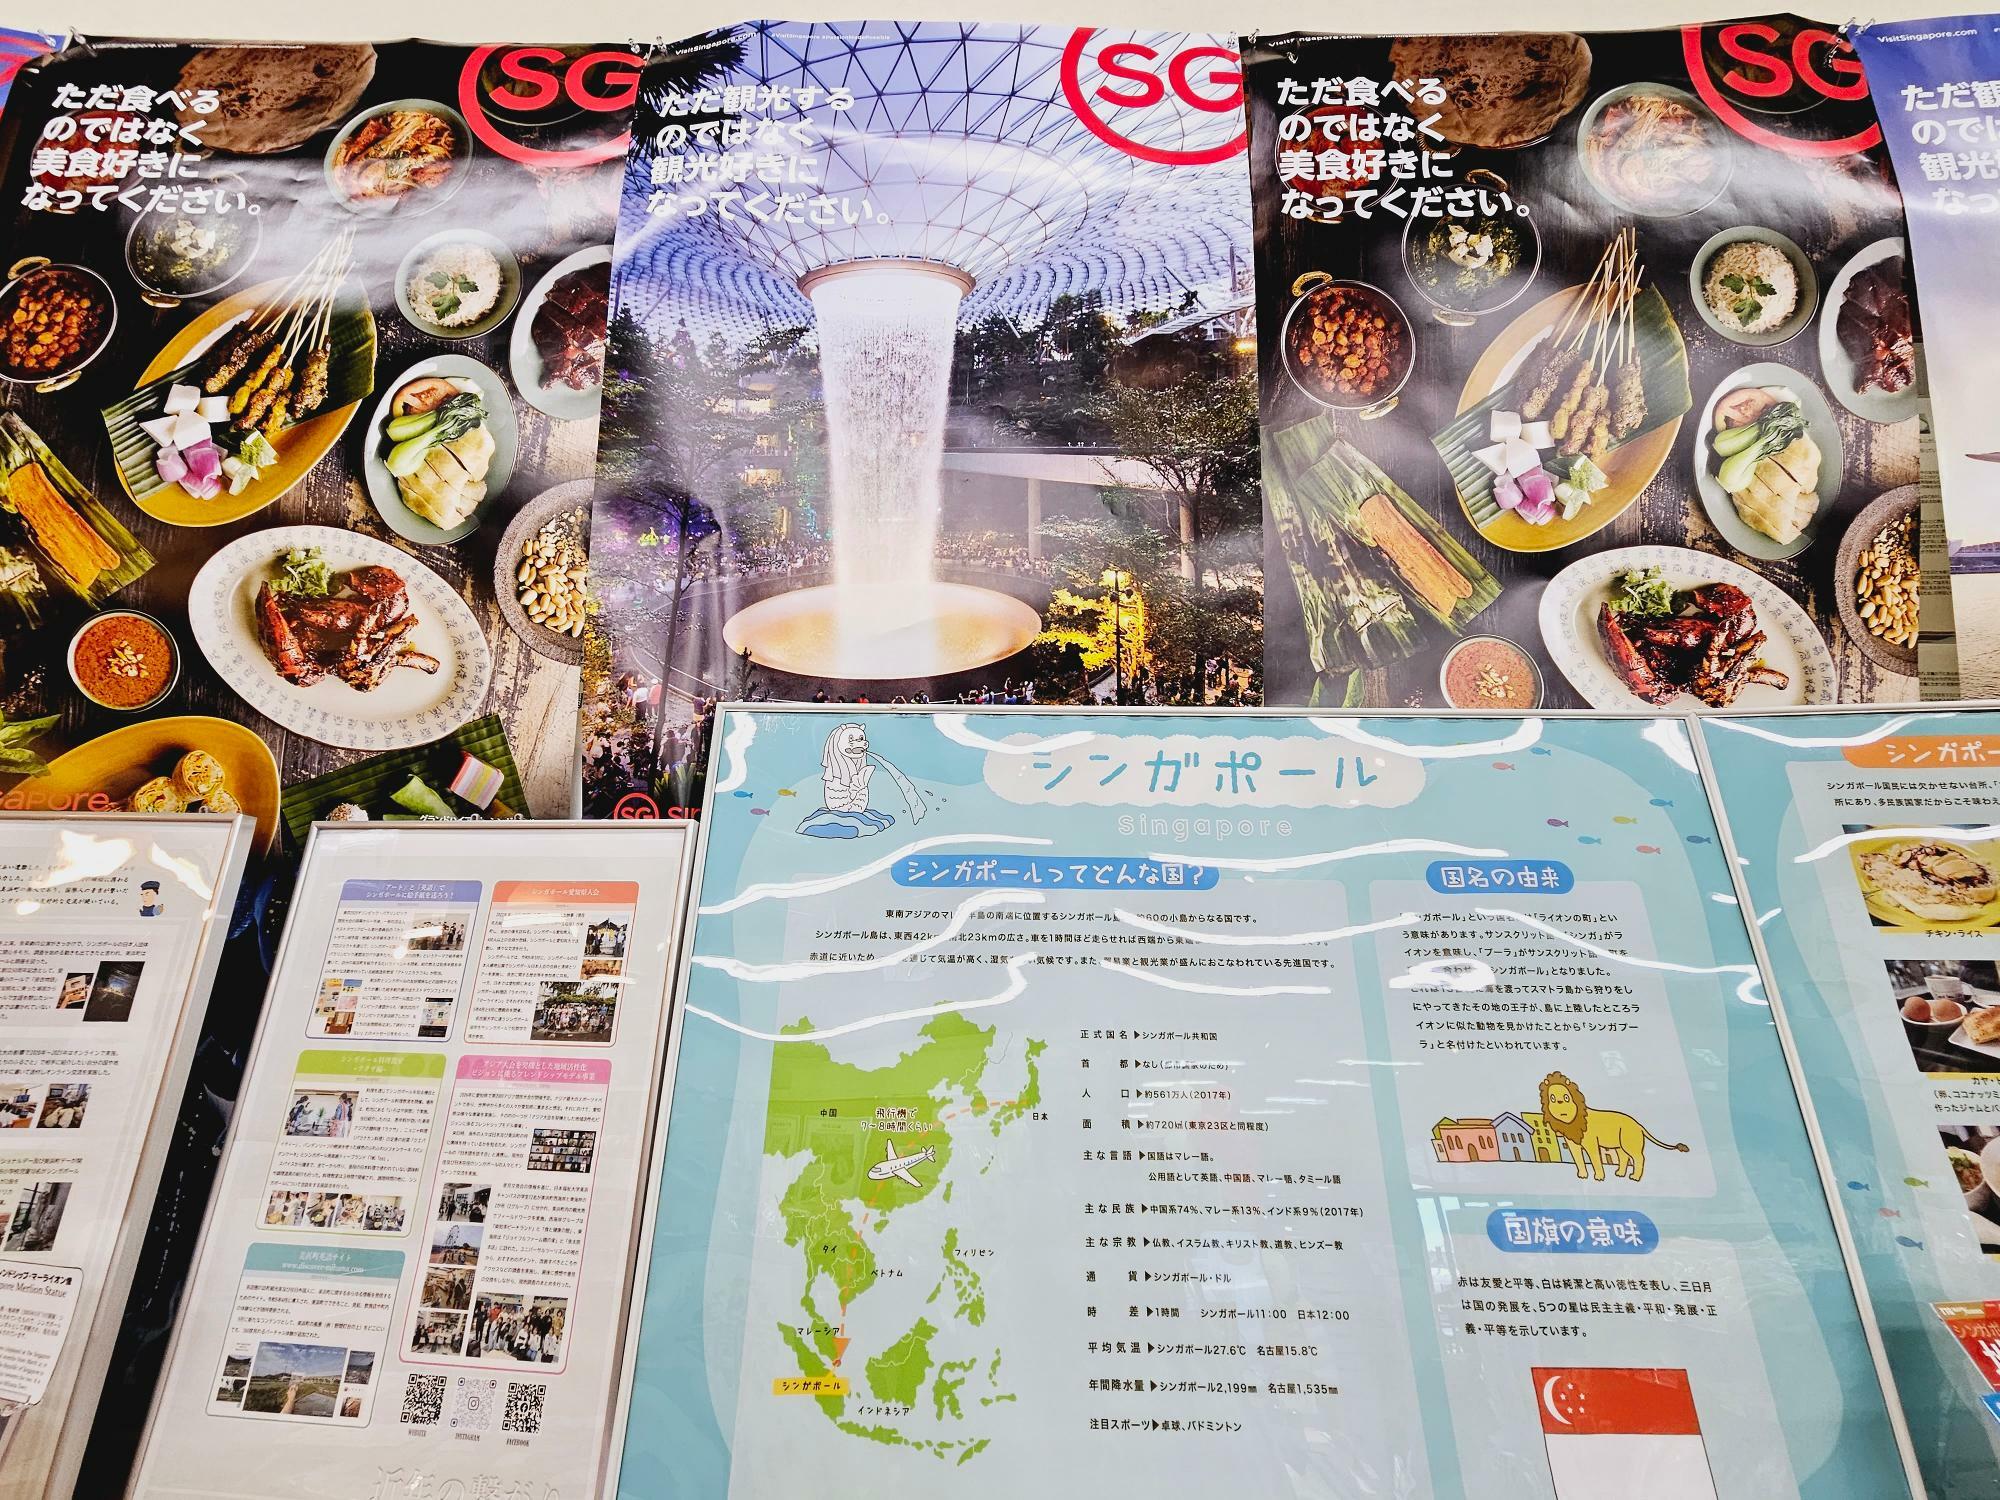 シンガポール基本情報や名物料理の解説など、充実したパネル展示。